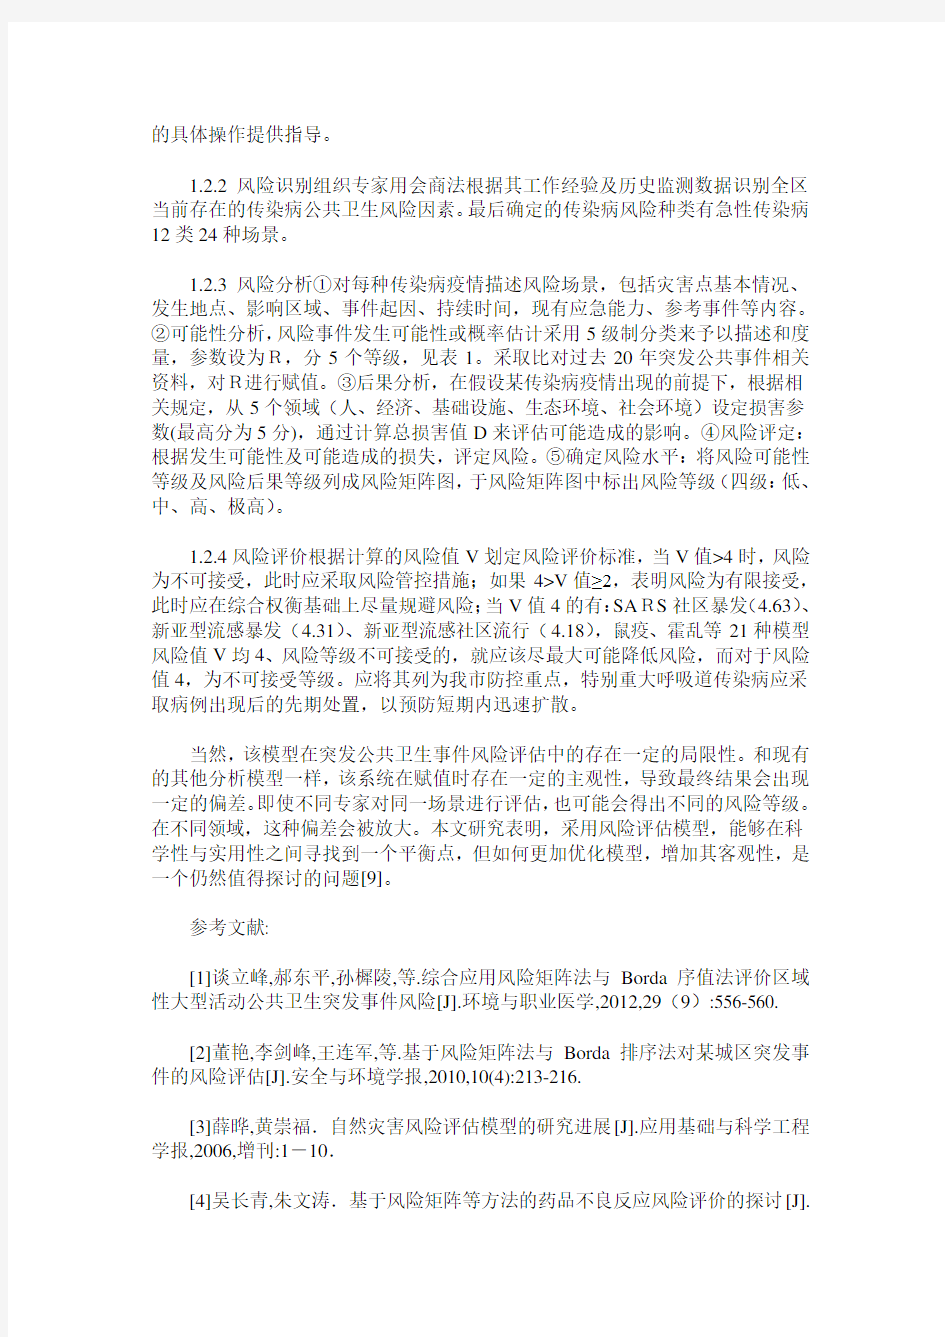 深圳市宝安区传染病疫情风险评估